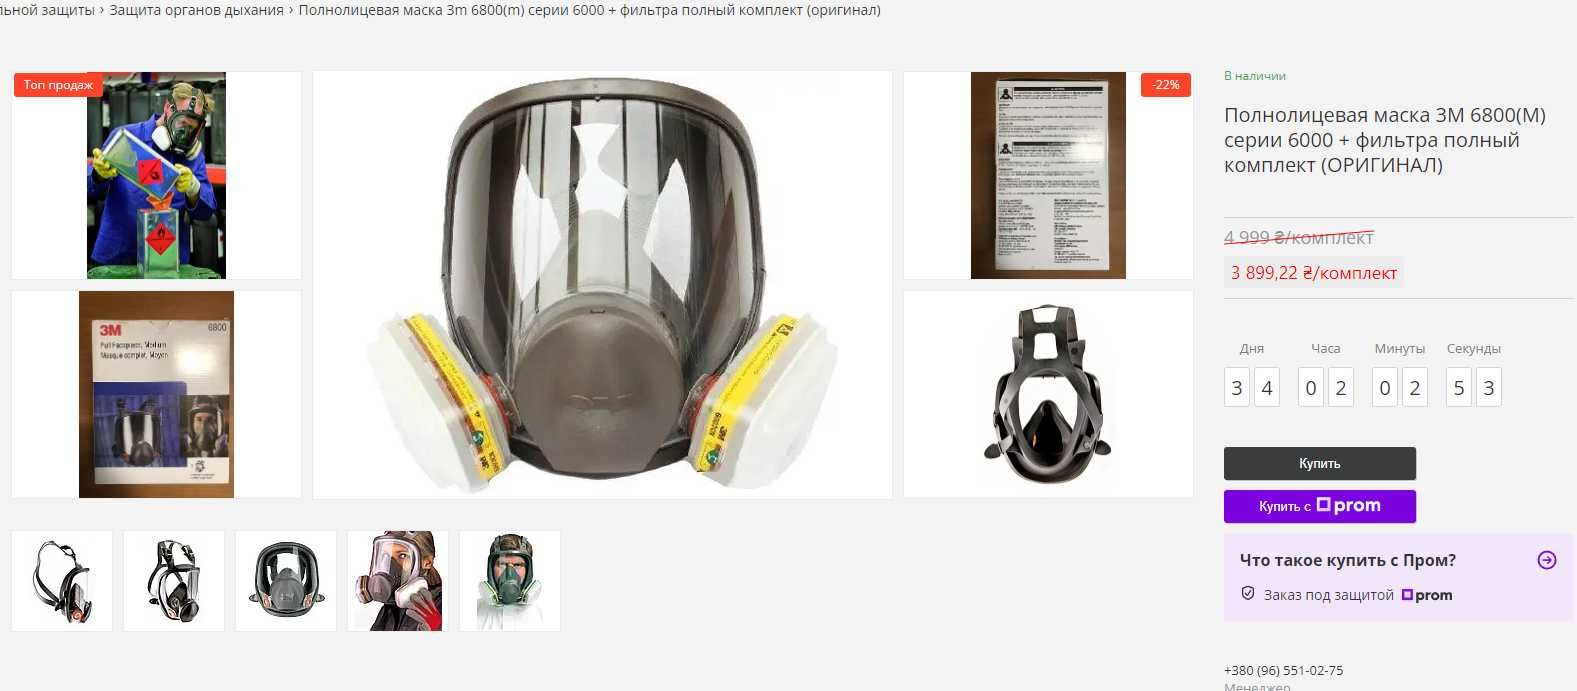 ТОП Полнолицевая маска 6800  + химичный фильтр 6057